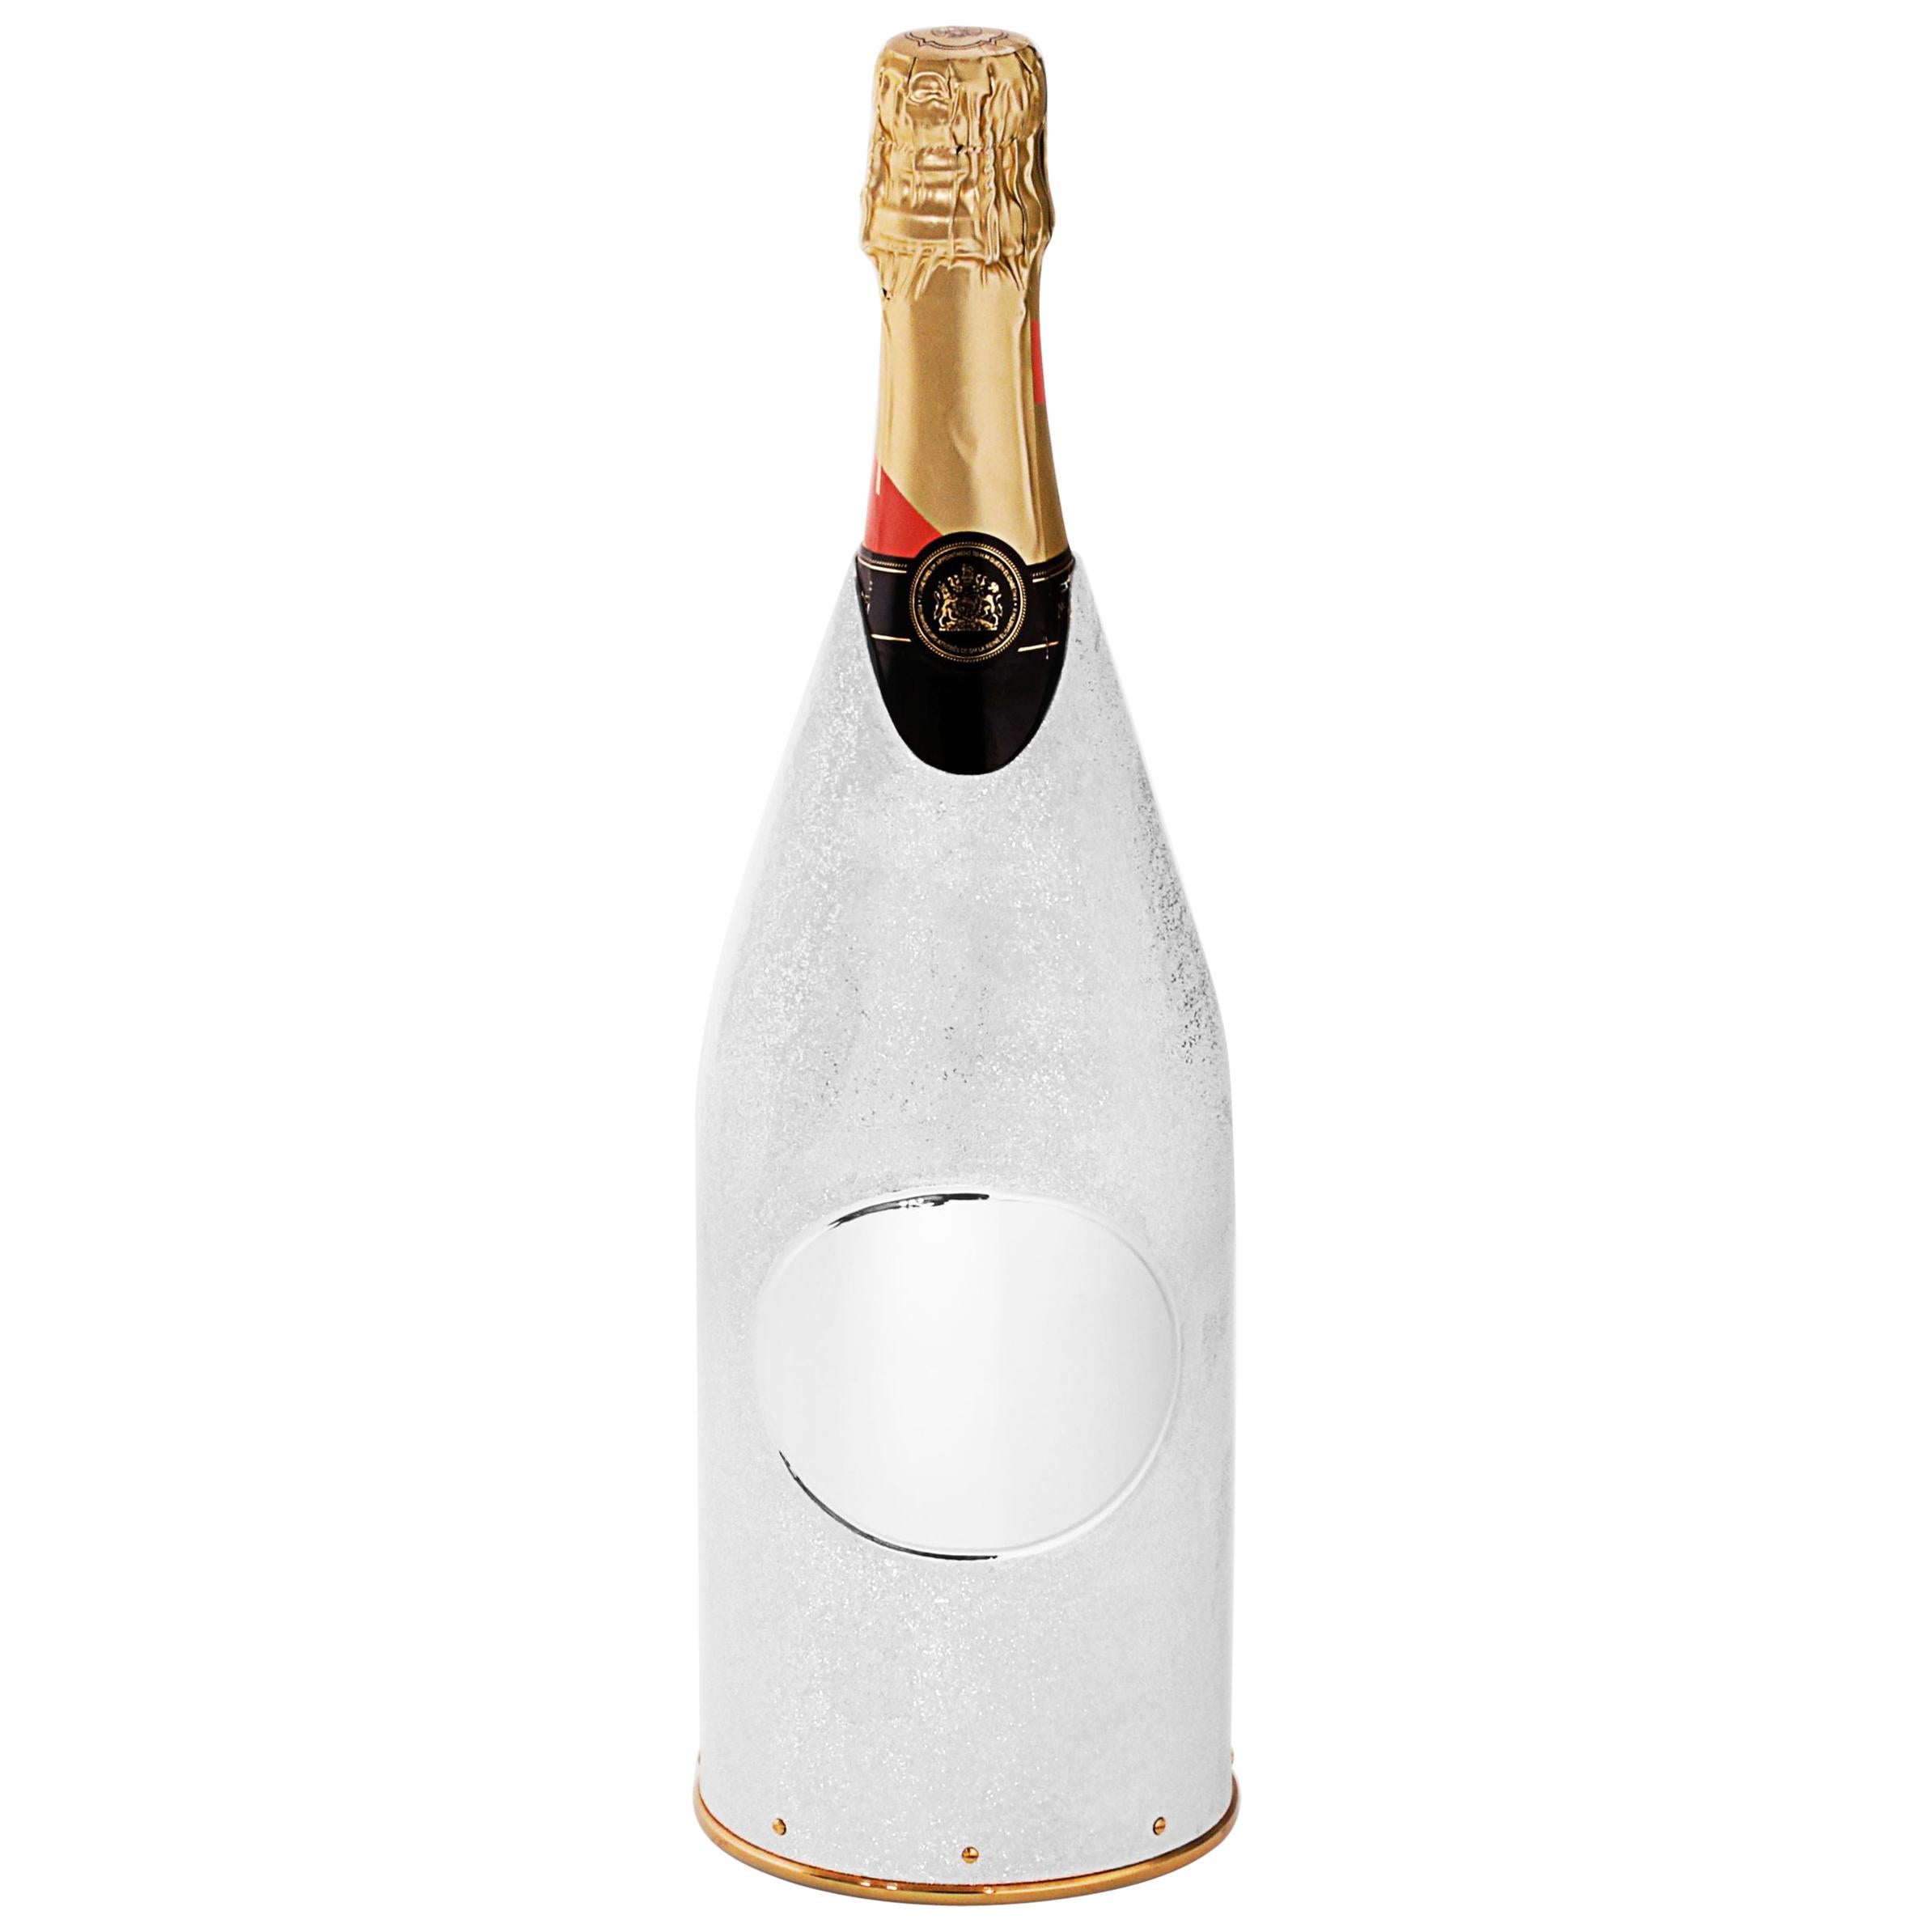 La valeur de cette housse/glacette de champagne repose sur les techniques innovantes utilisées pour sa production. Comme on peut le voir clairement sur les photos, la surface de l'argent pur 999/°° K-OVER brille comme la Lune. Cette texture